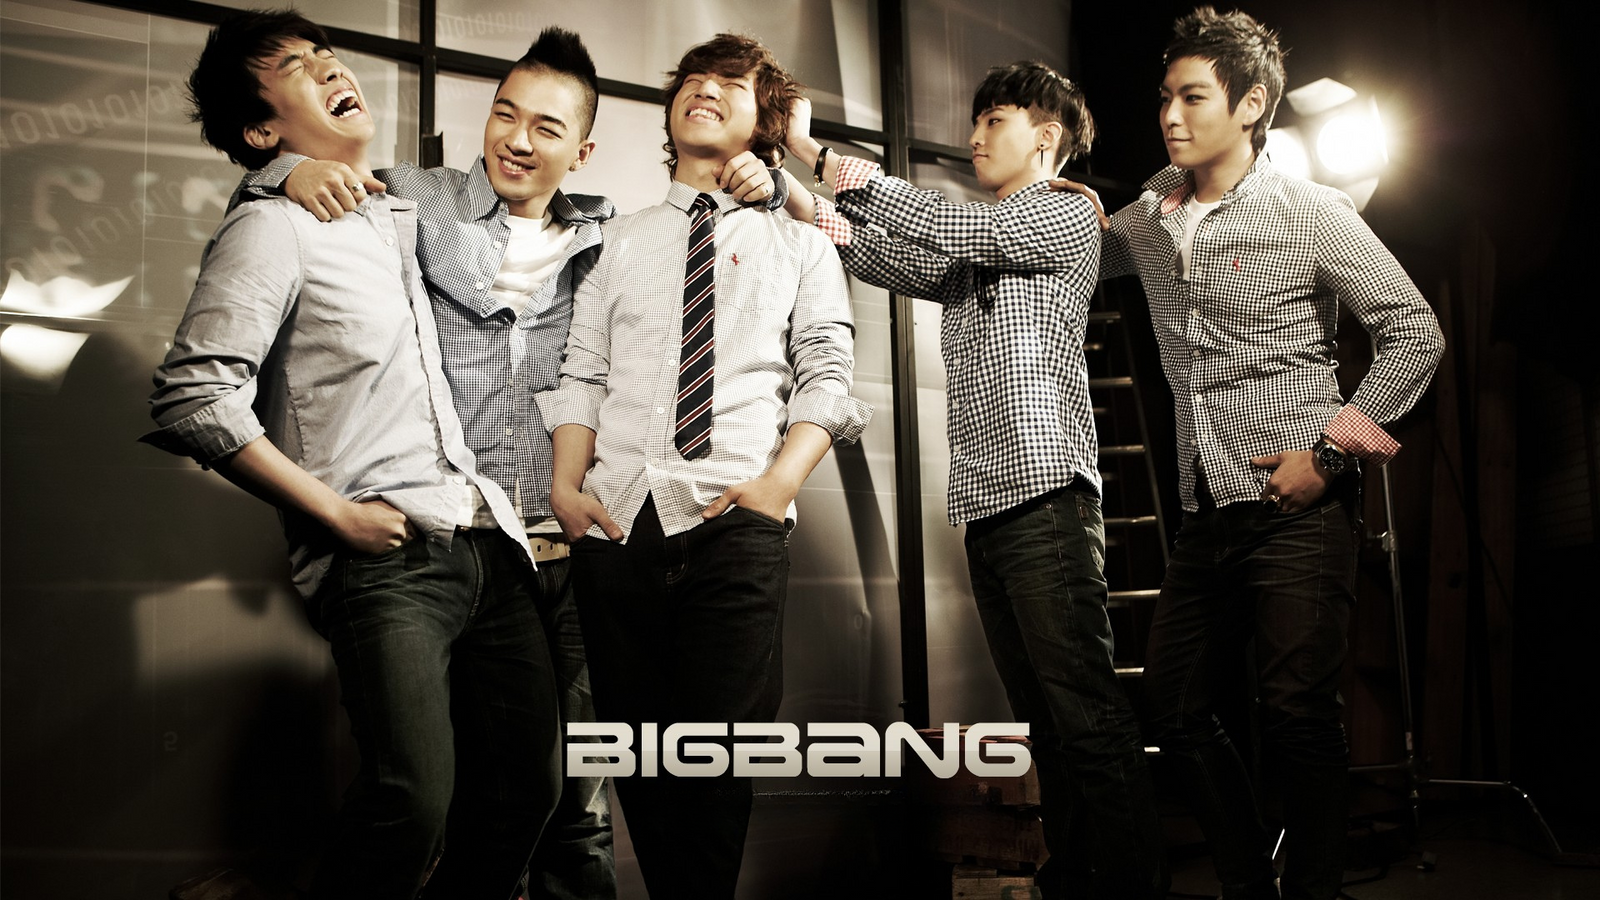 Dieverlockende Musik Von Bigbang